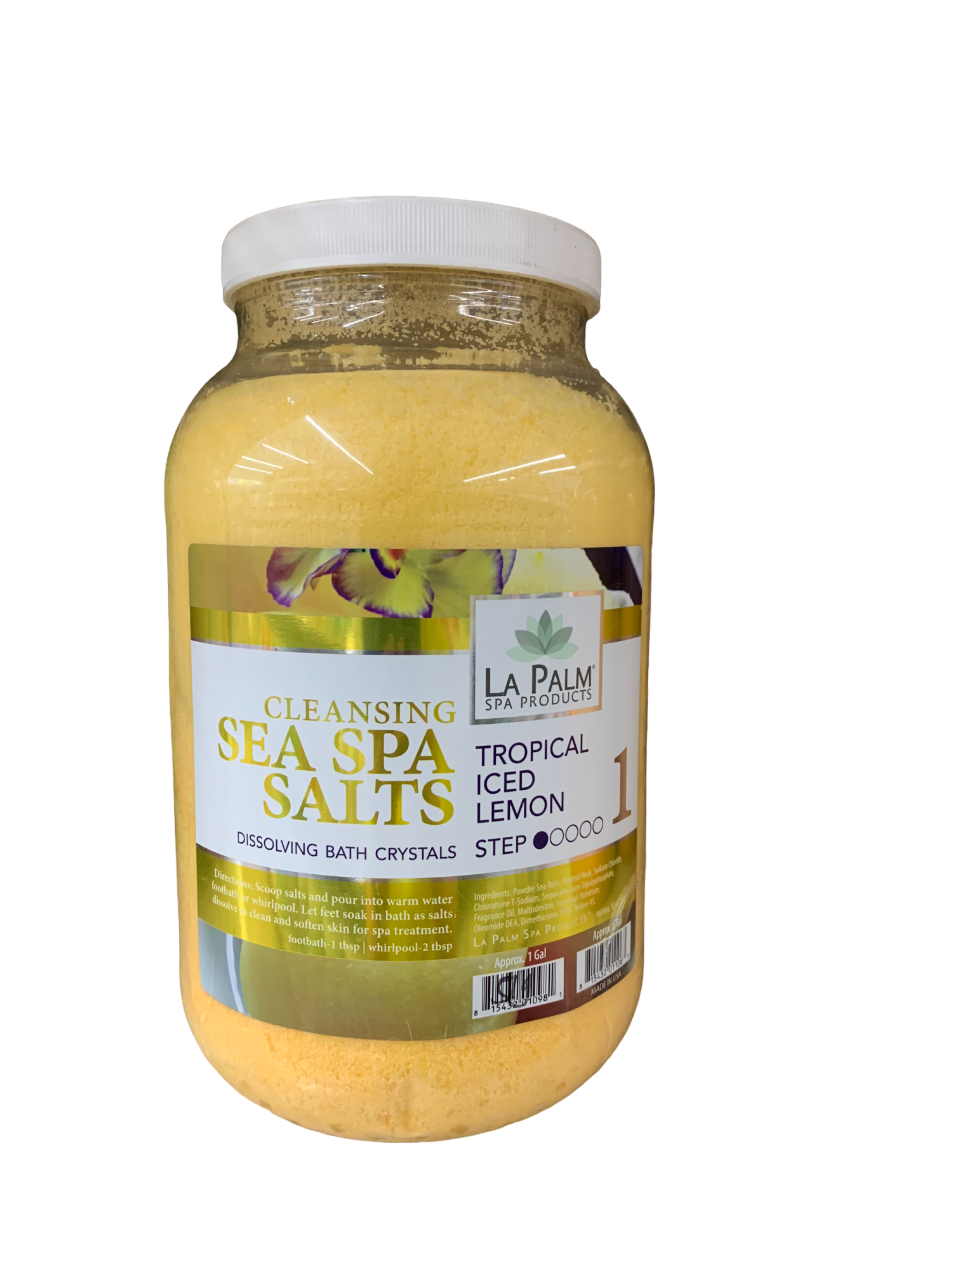 Lapalm Sea Spa Salt Tropical Iced Lemon